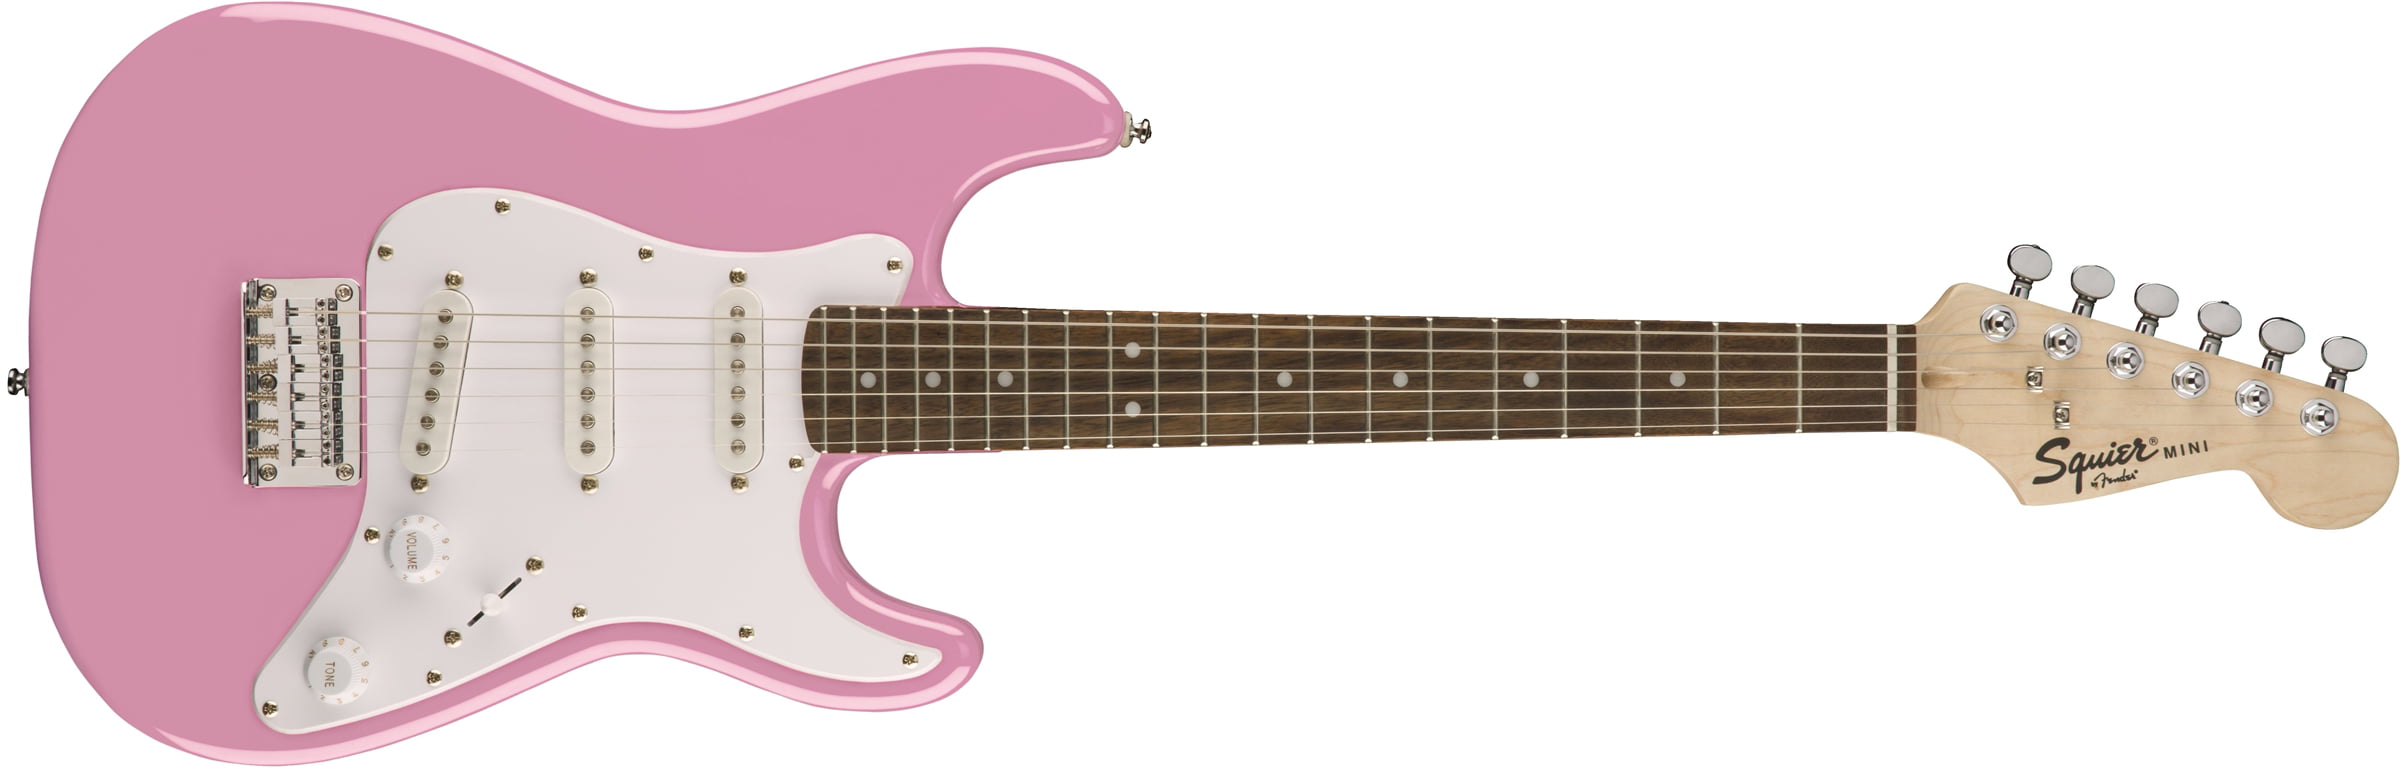 Fender Squier Mini Strat V2 Electric Guitar, Hardwood Fingerboard